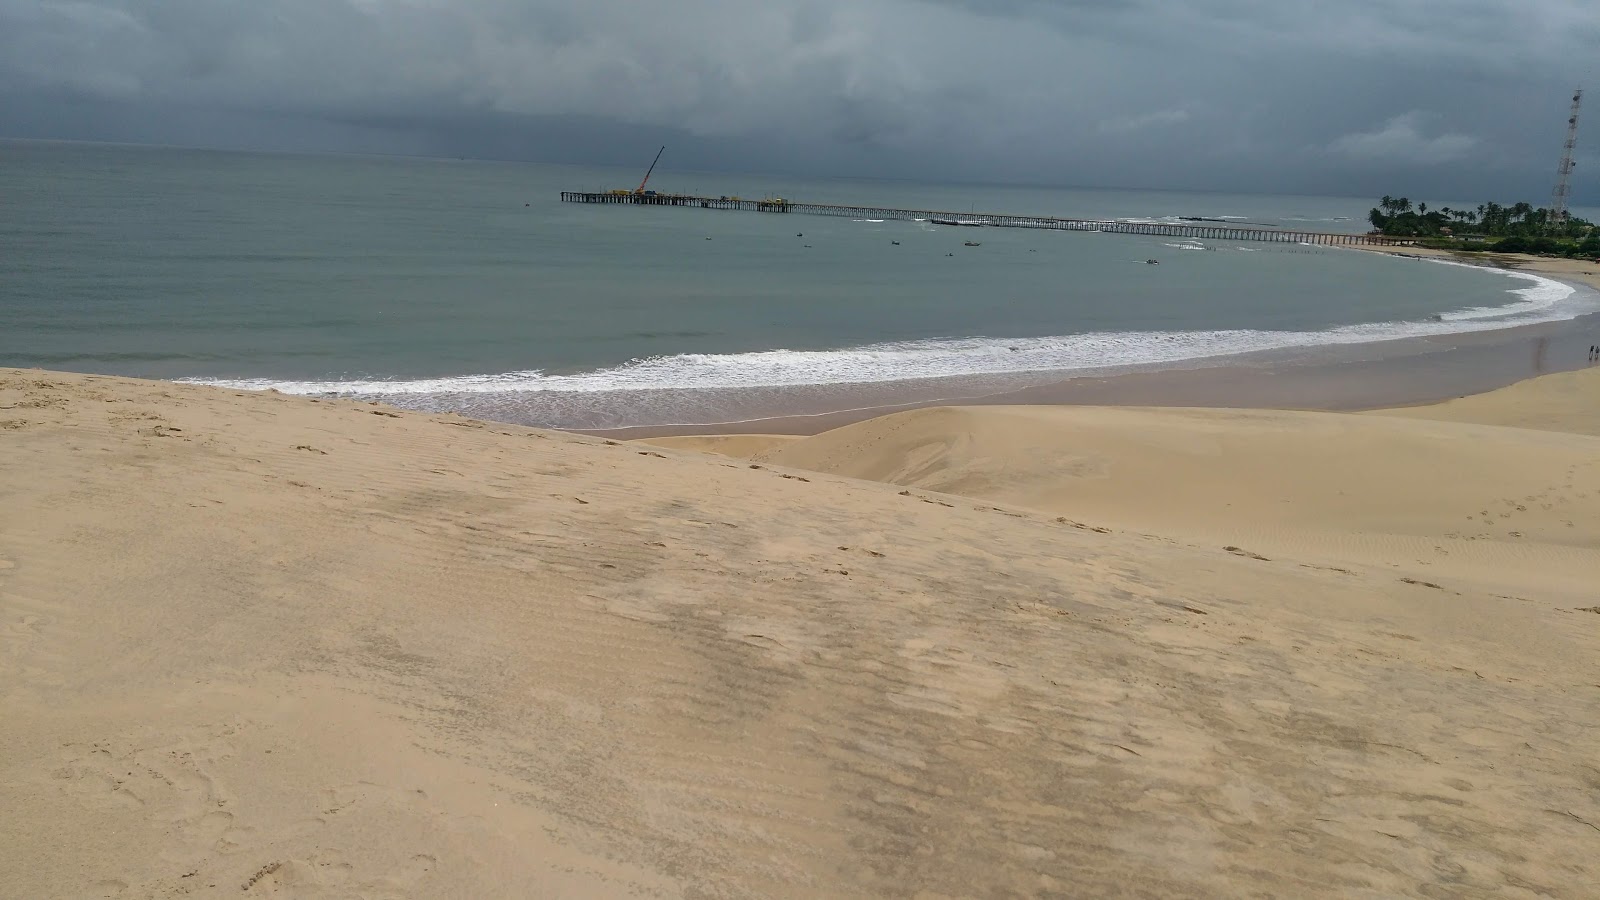 Praia Das Almas.'in fotoğrafı geniş plaj ile birlikte